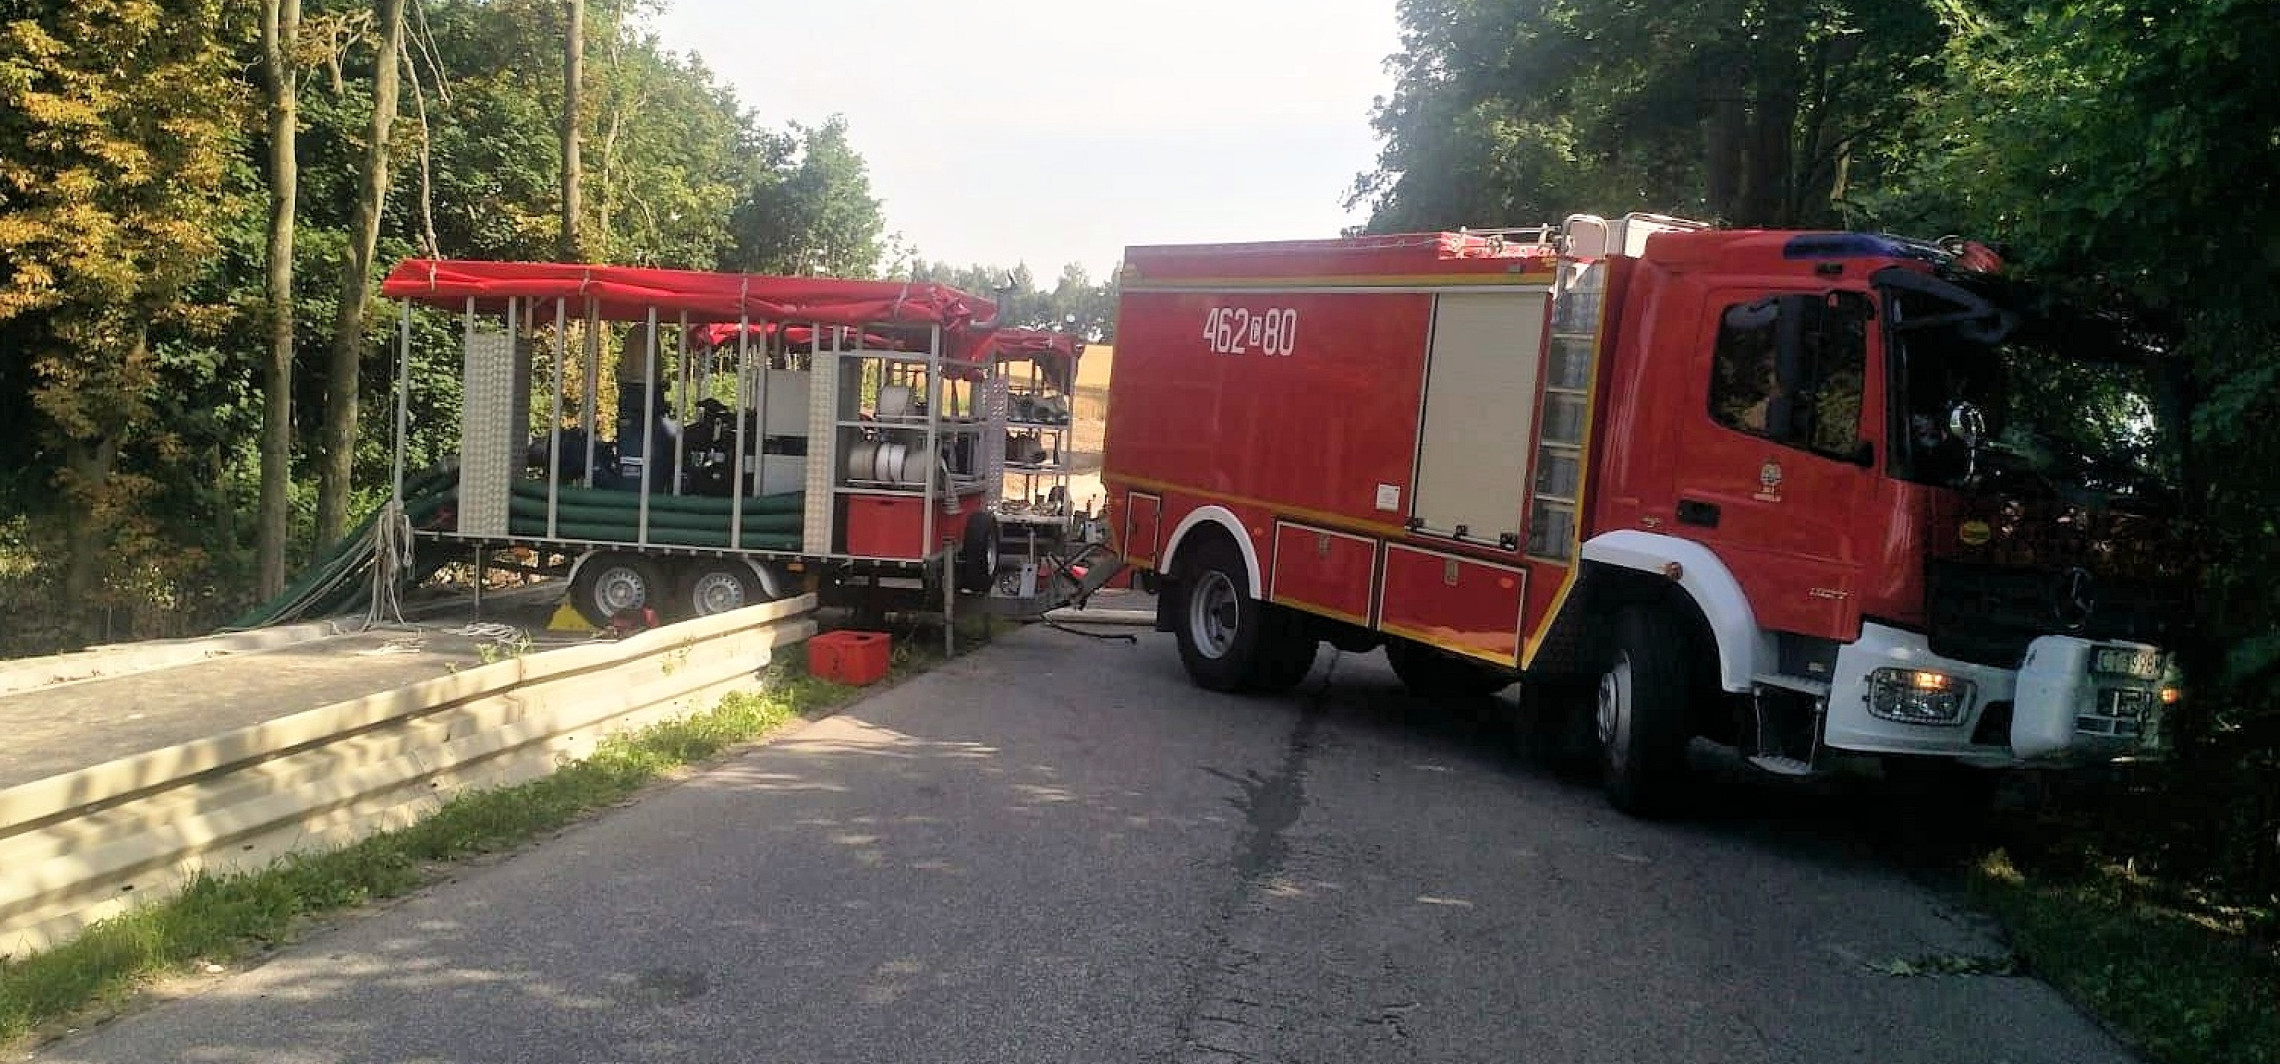 Inowrocław - Nasi strażacy pomagają też w innych regionach